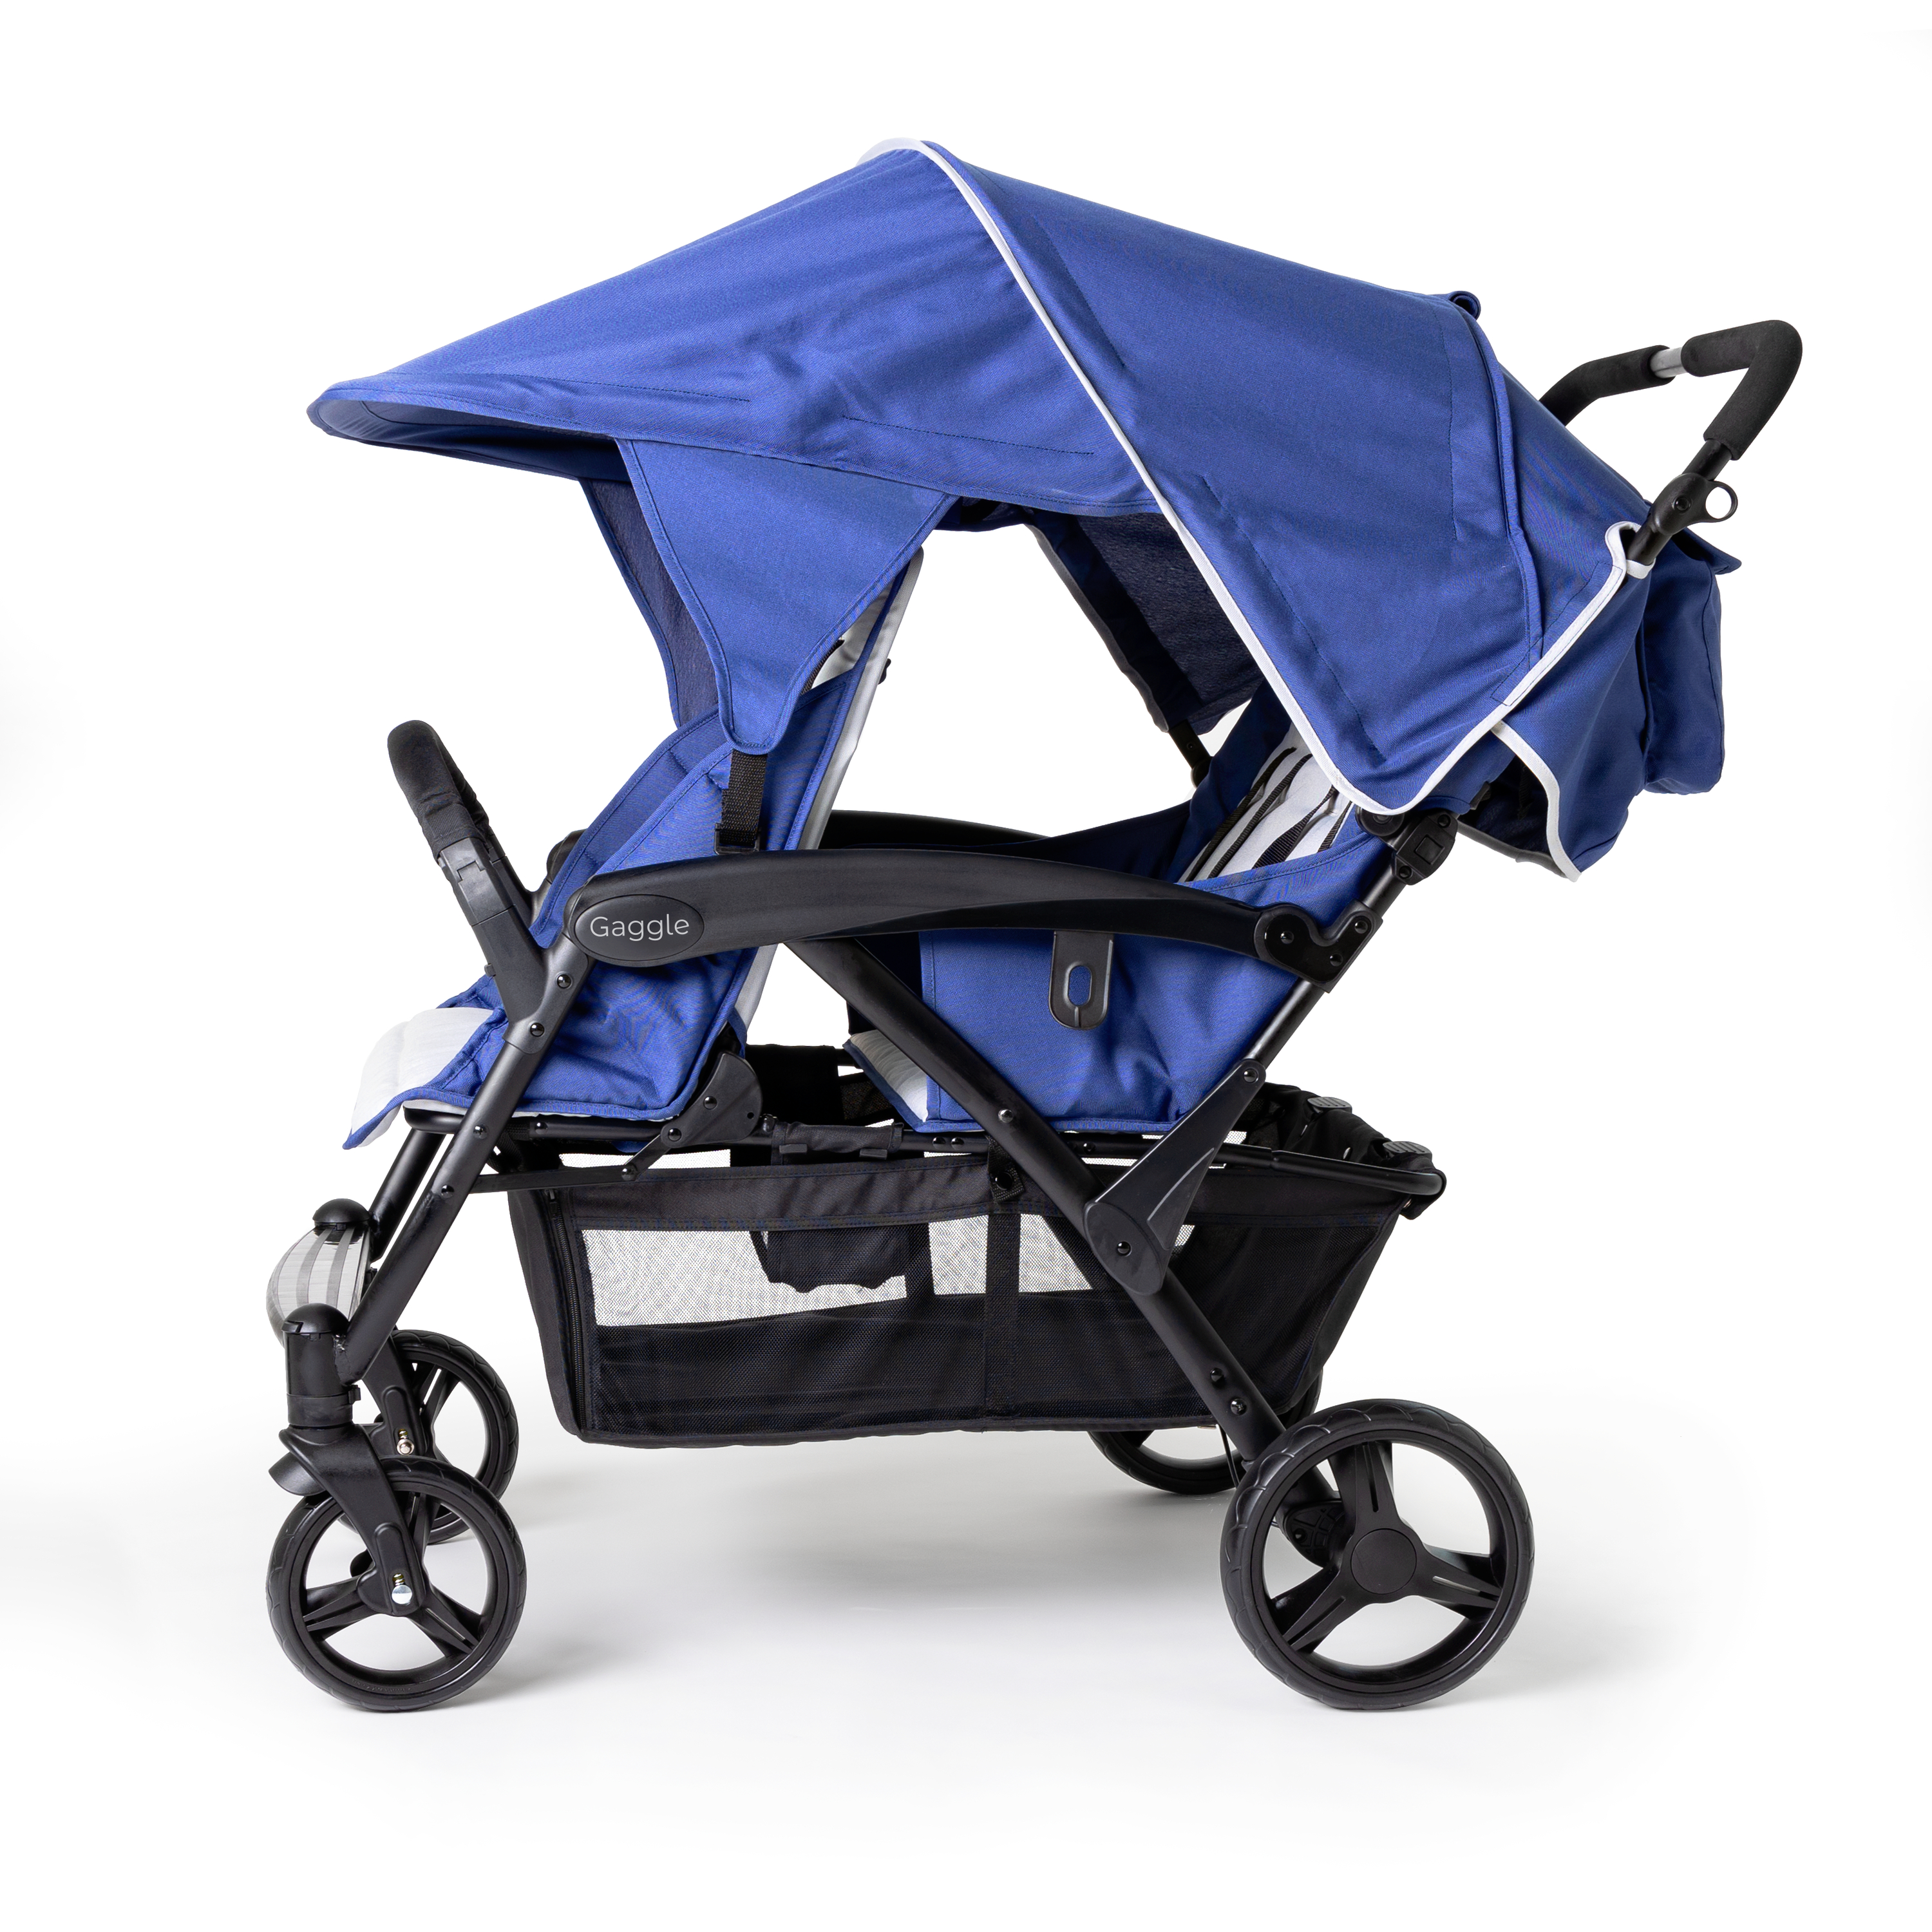 Gaggle Odyssey 4x4 quad kinderwagen / buggy voor 4 kinderen in blauw/zwart